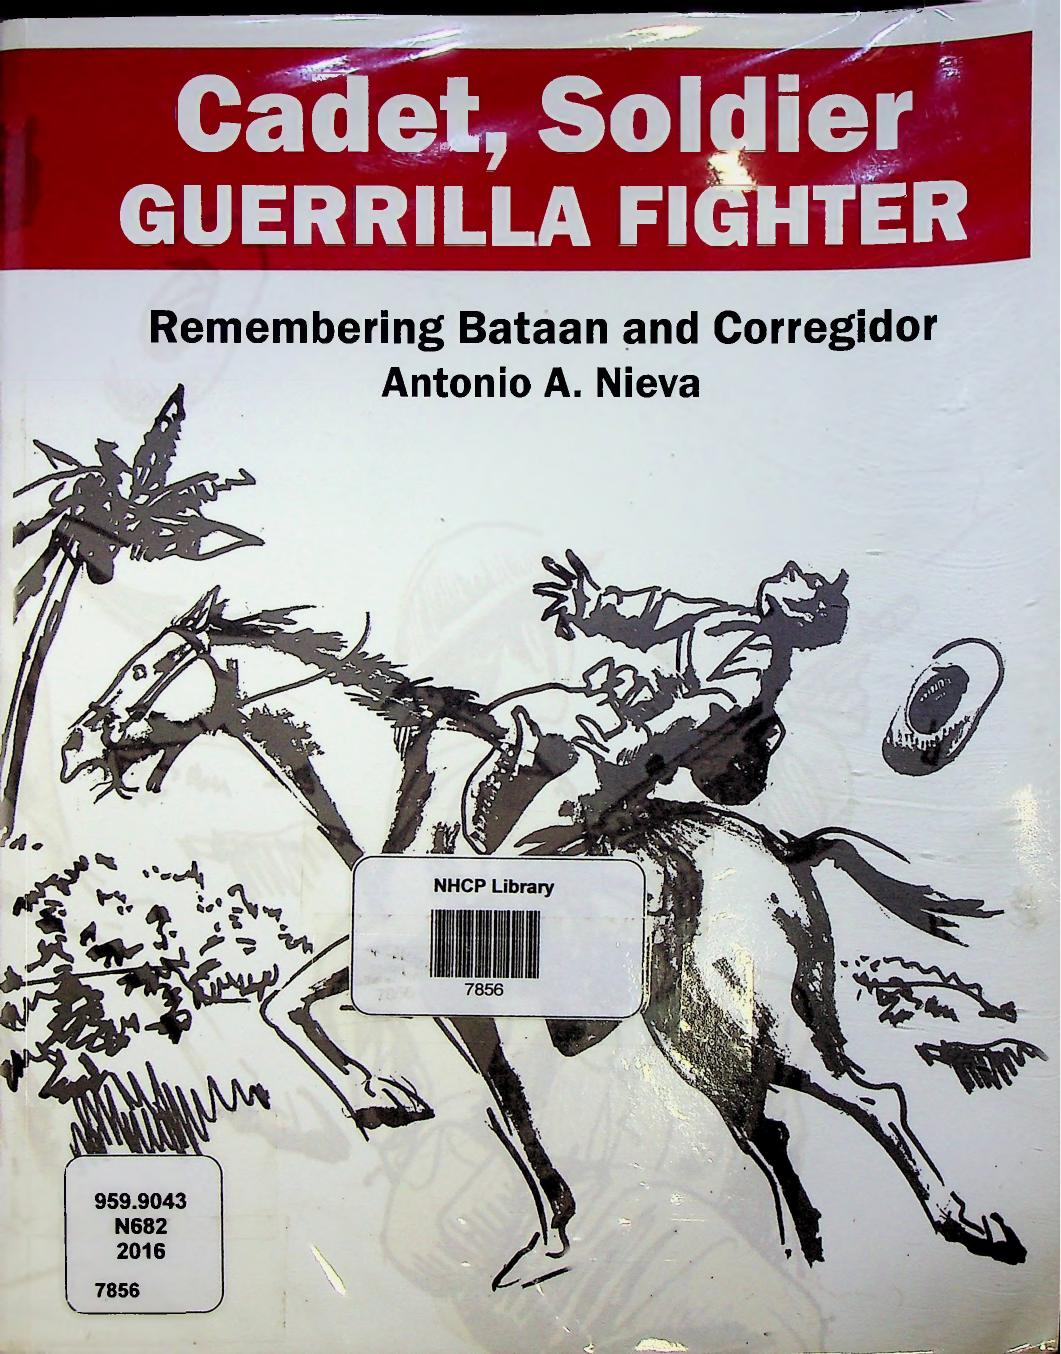 Cadet, Soldier, Guerrilla Fighter: Remembering Bataan and Corregidor by Antonio A. Nieva